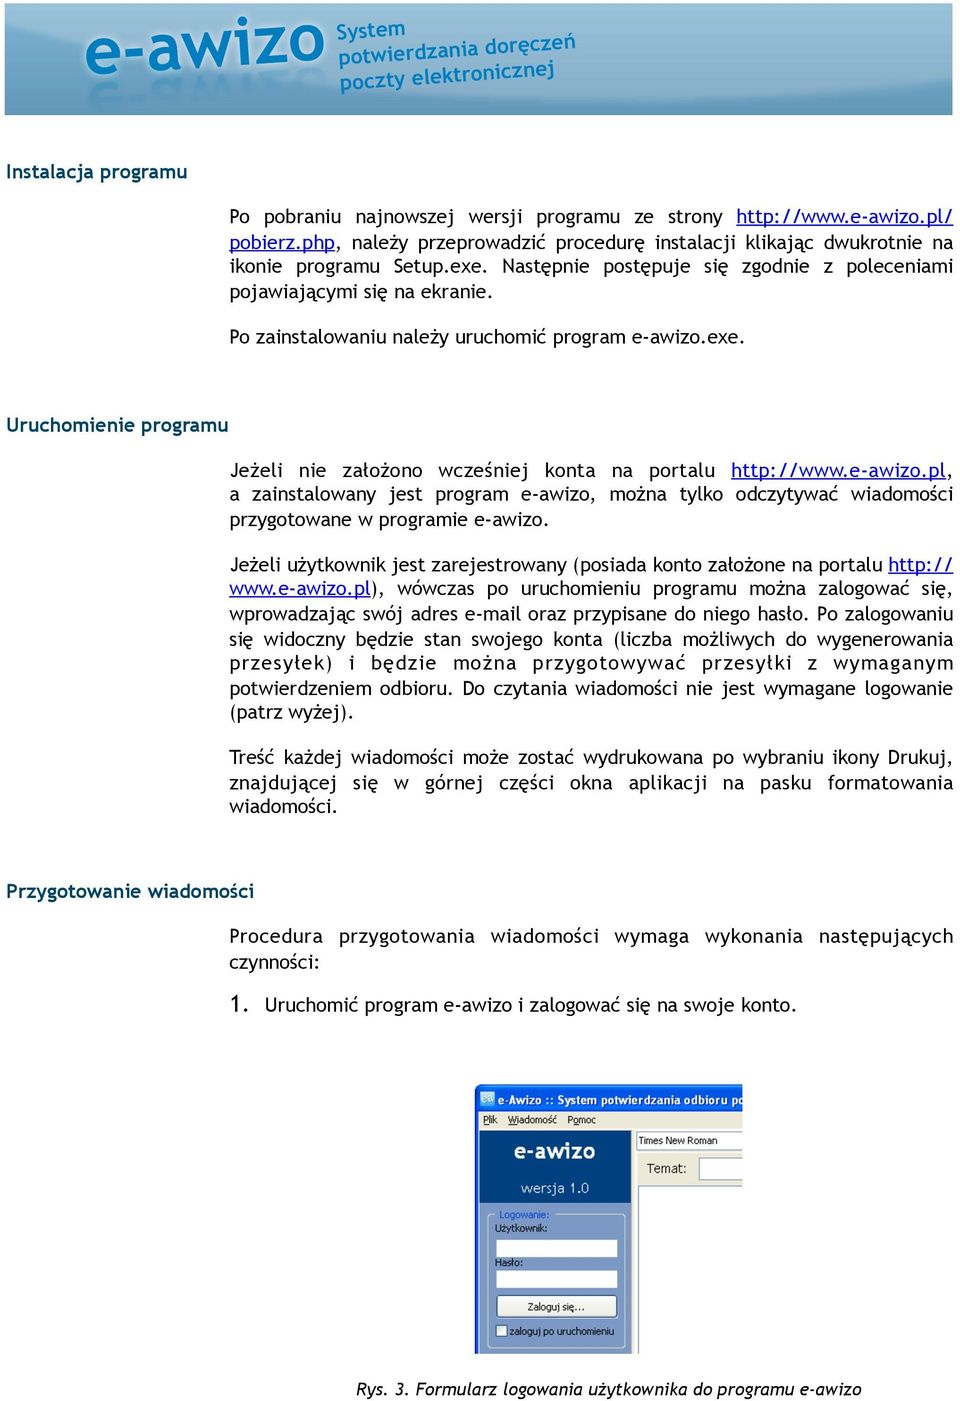 Uruchomienie programu Jeżeli nie założono wcześniej konta na portalu http://www.e-awizo.pl, a zainstalowany jest program e-awizo, można tylko odczytywać wiadomości przygotowane w programie e-awizo.